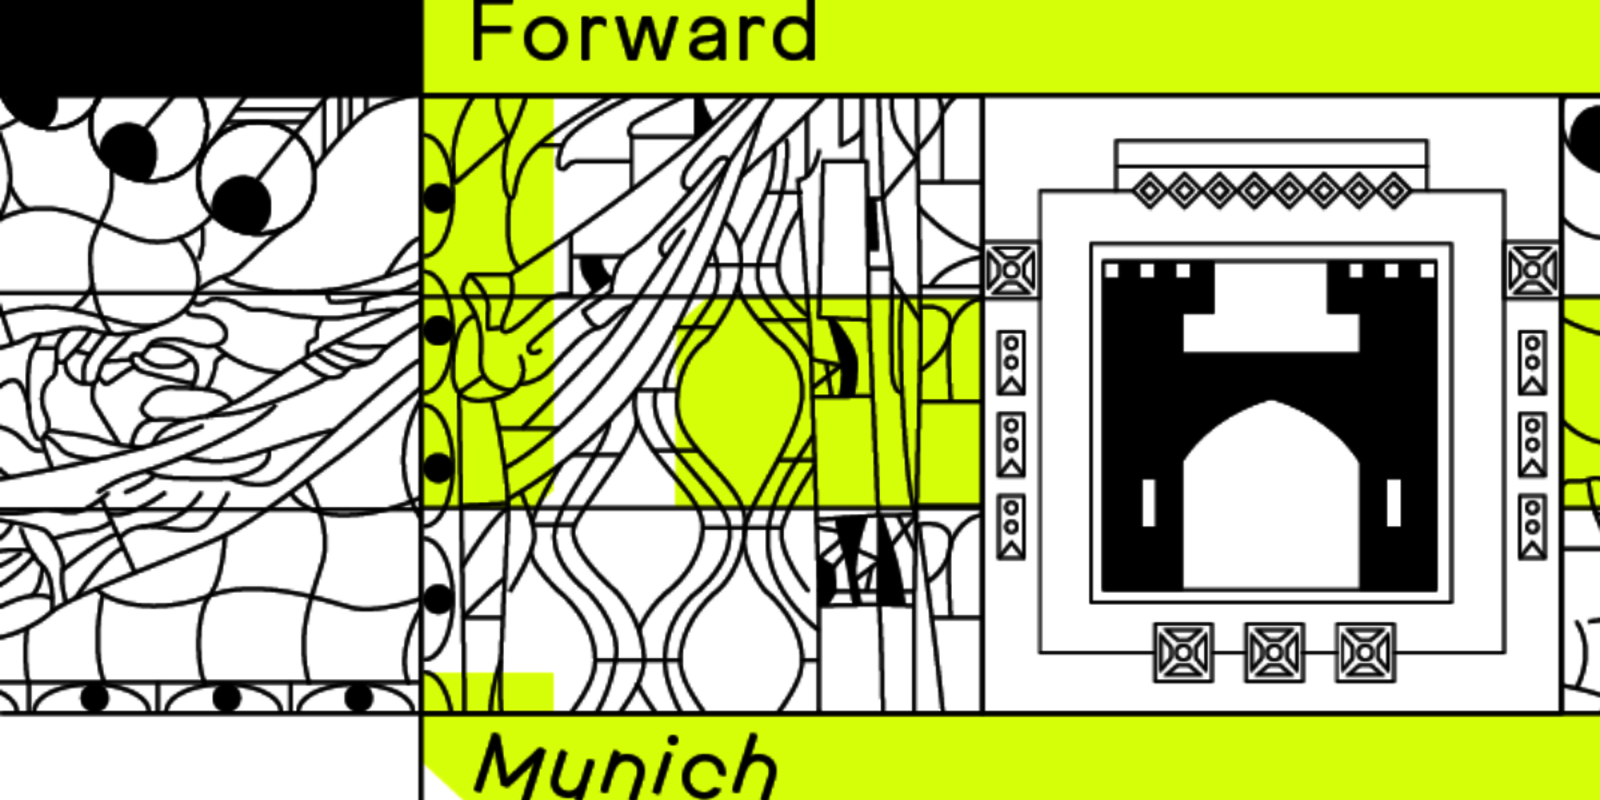 Forward Festival Munich